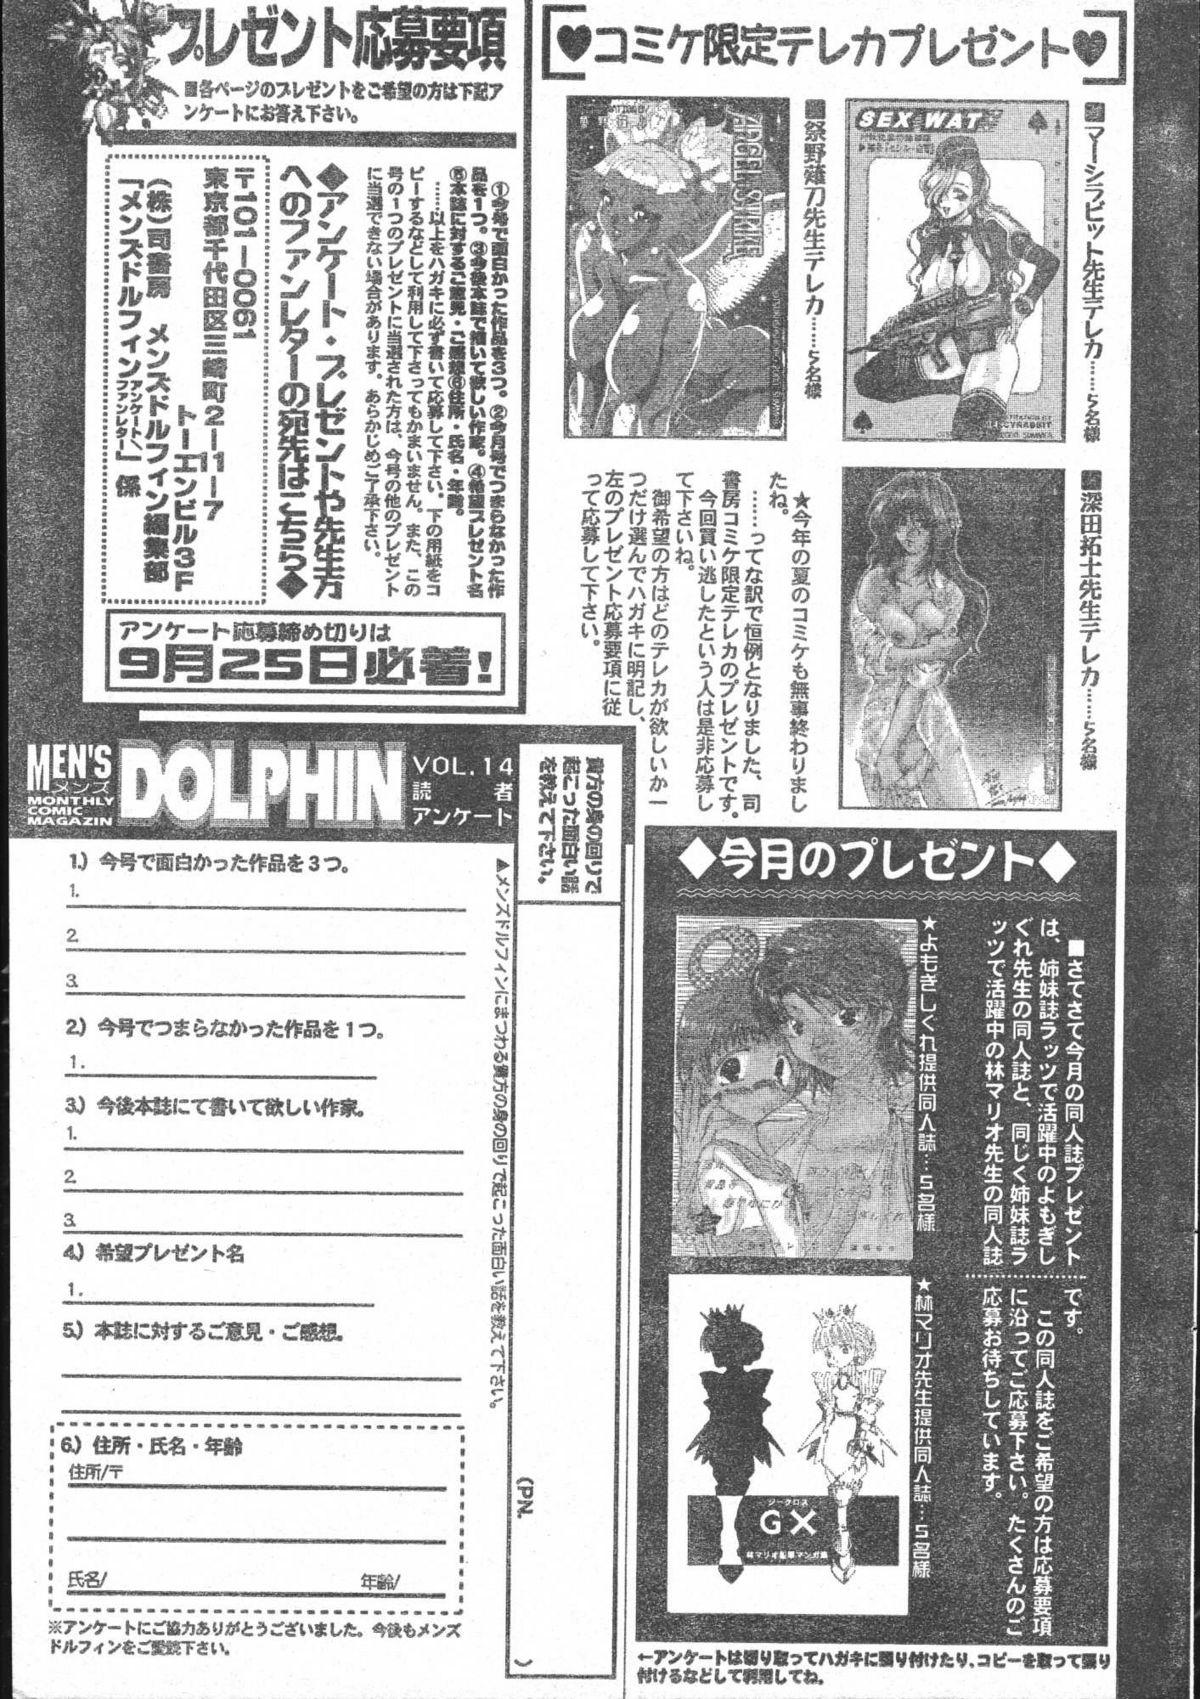 Men's Dolphin 2000-10 200